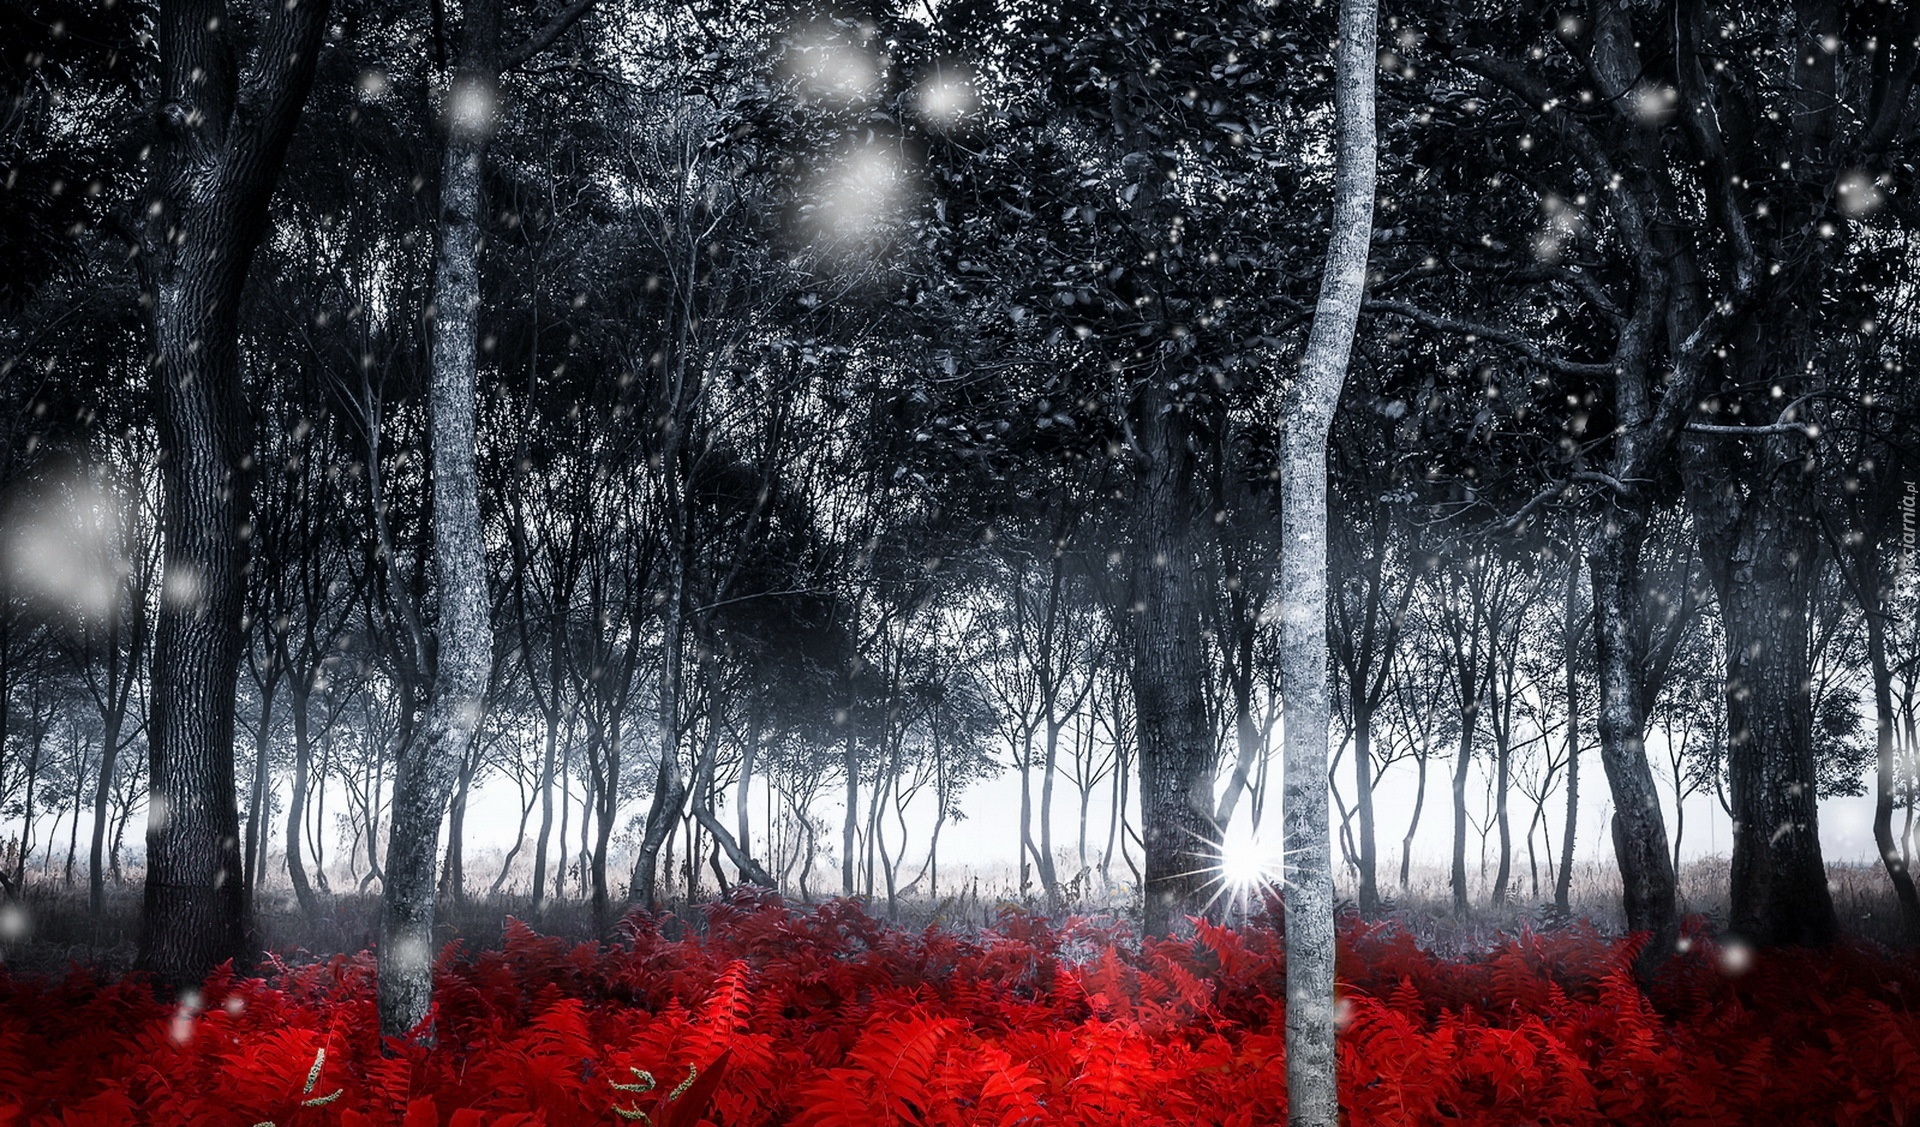 Las, Śnieg, Drzewa, Czerwona Paproć